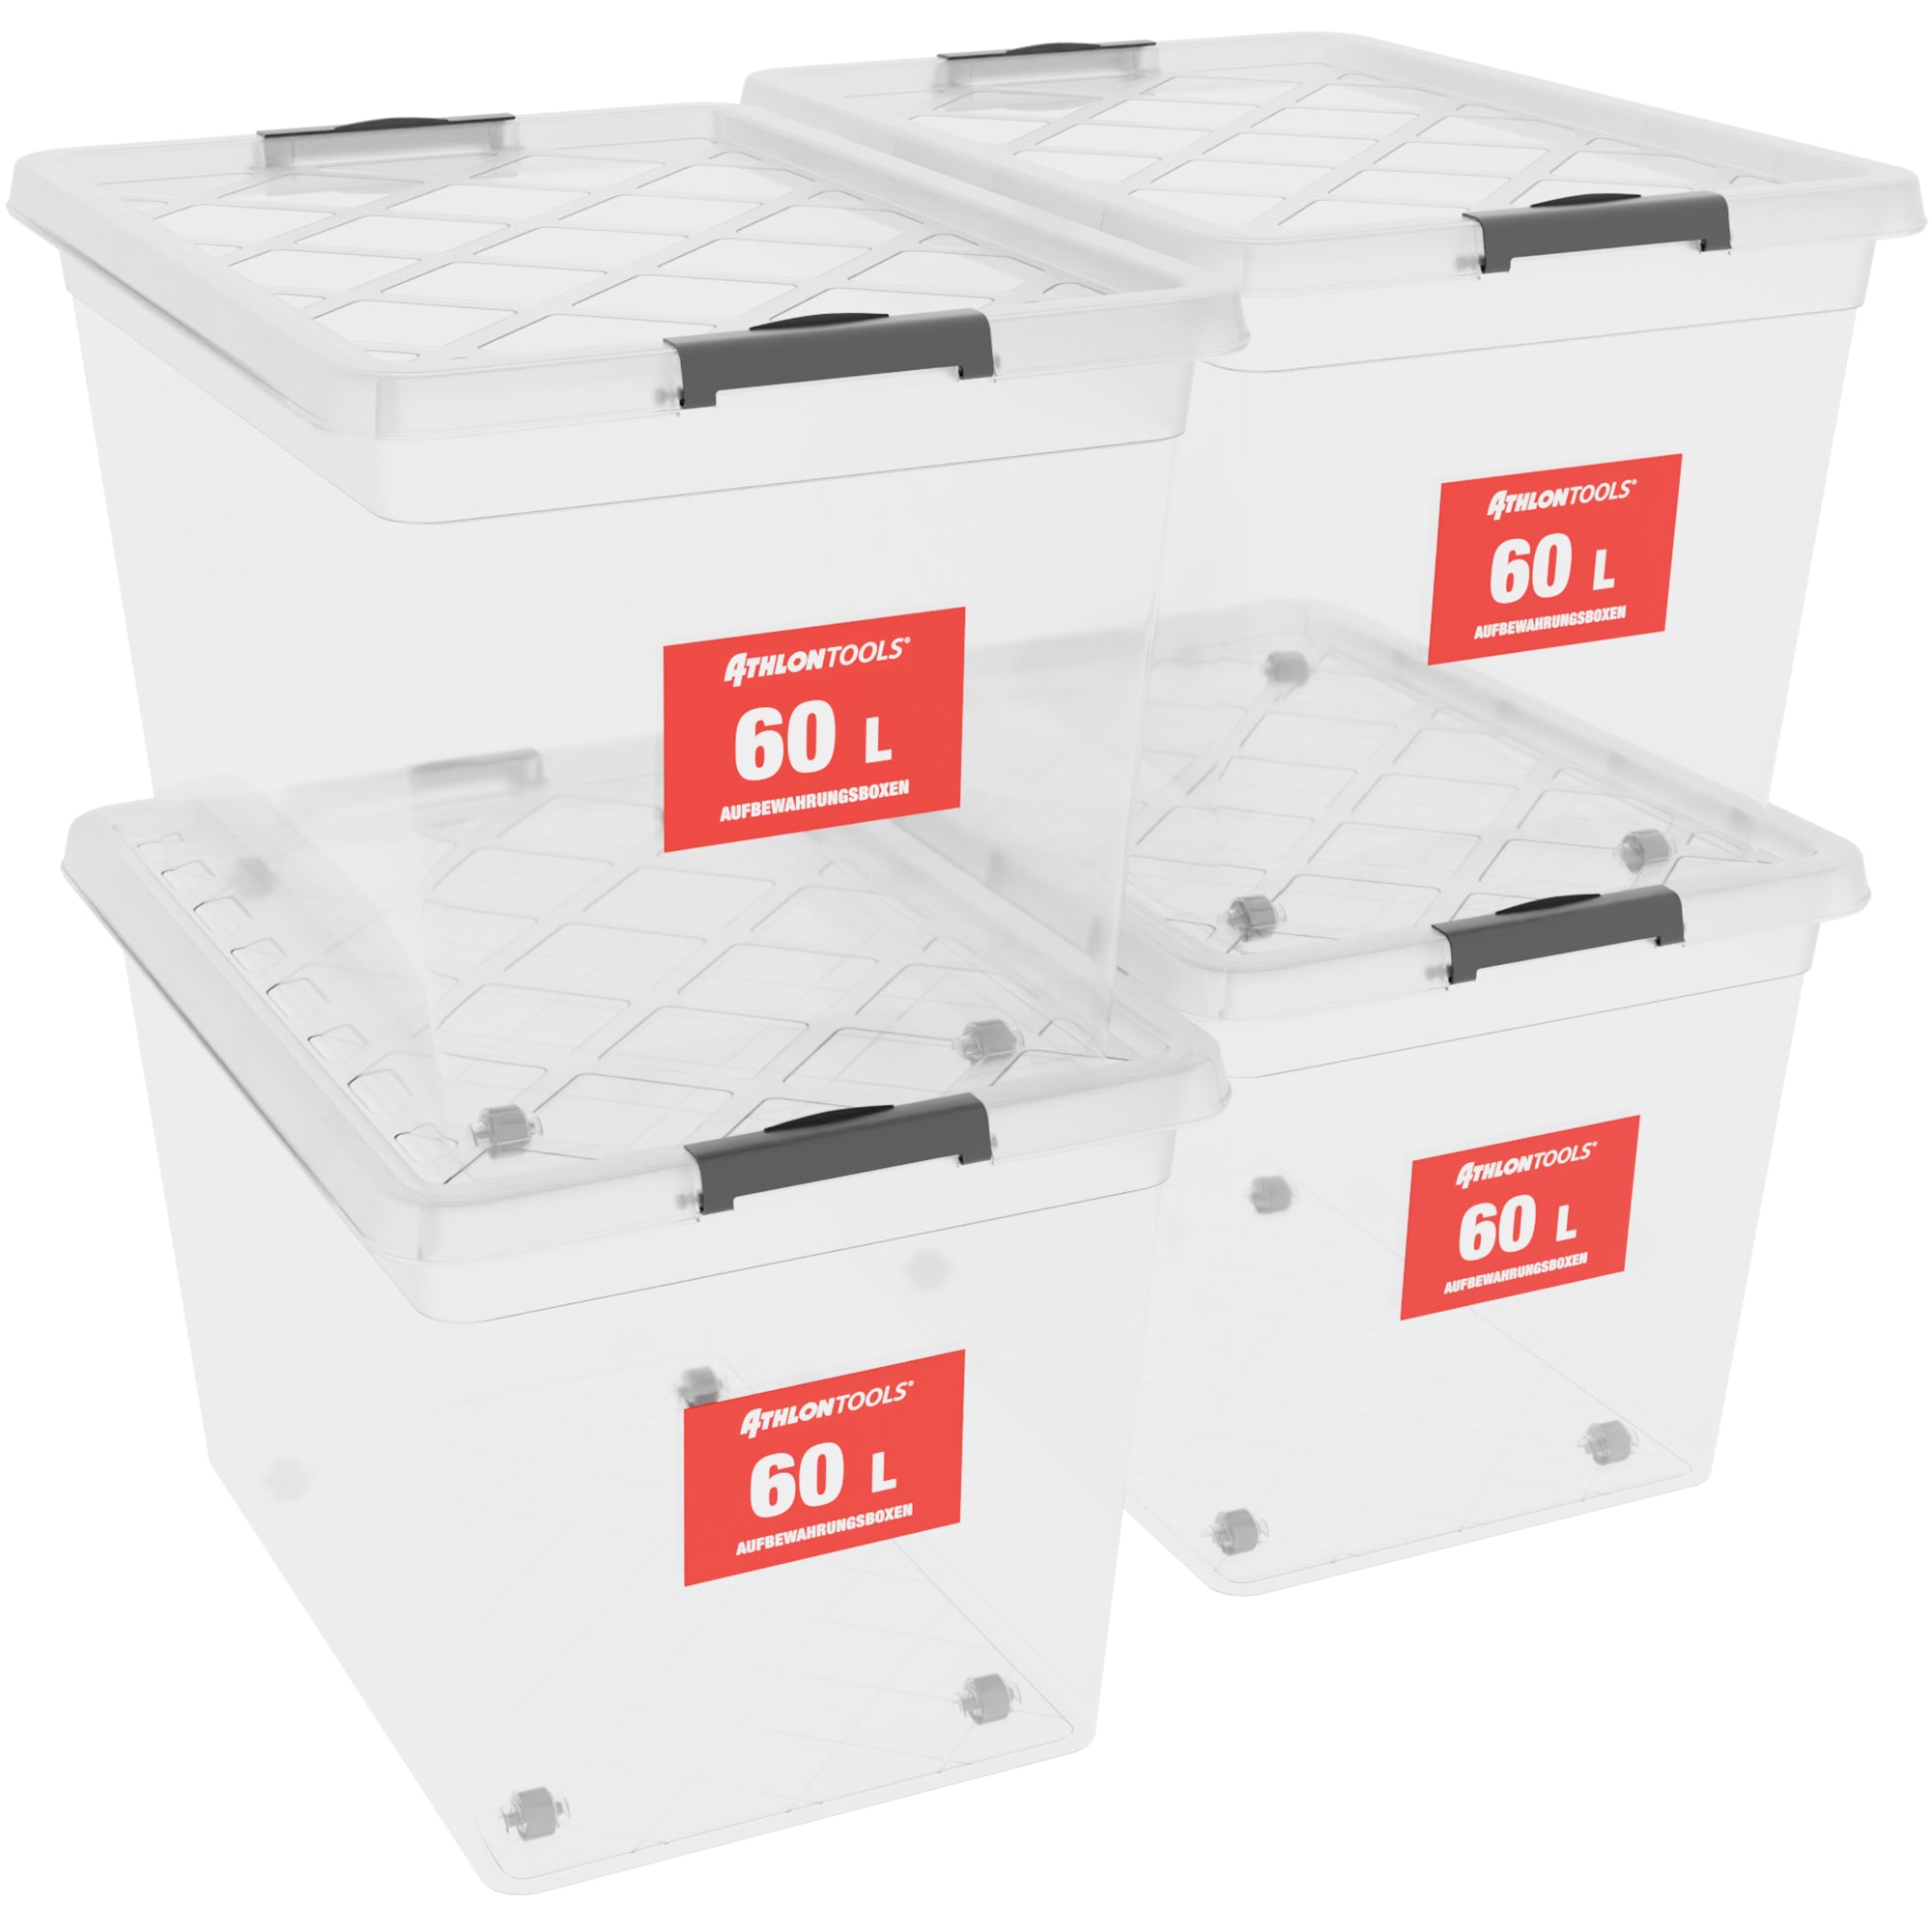 4x 60 L Aufbewahrungsboxen mit Deckel – ATHLON TOOLS B2B